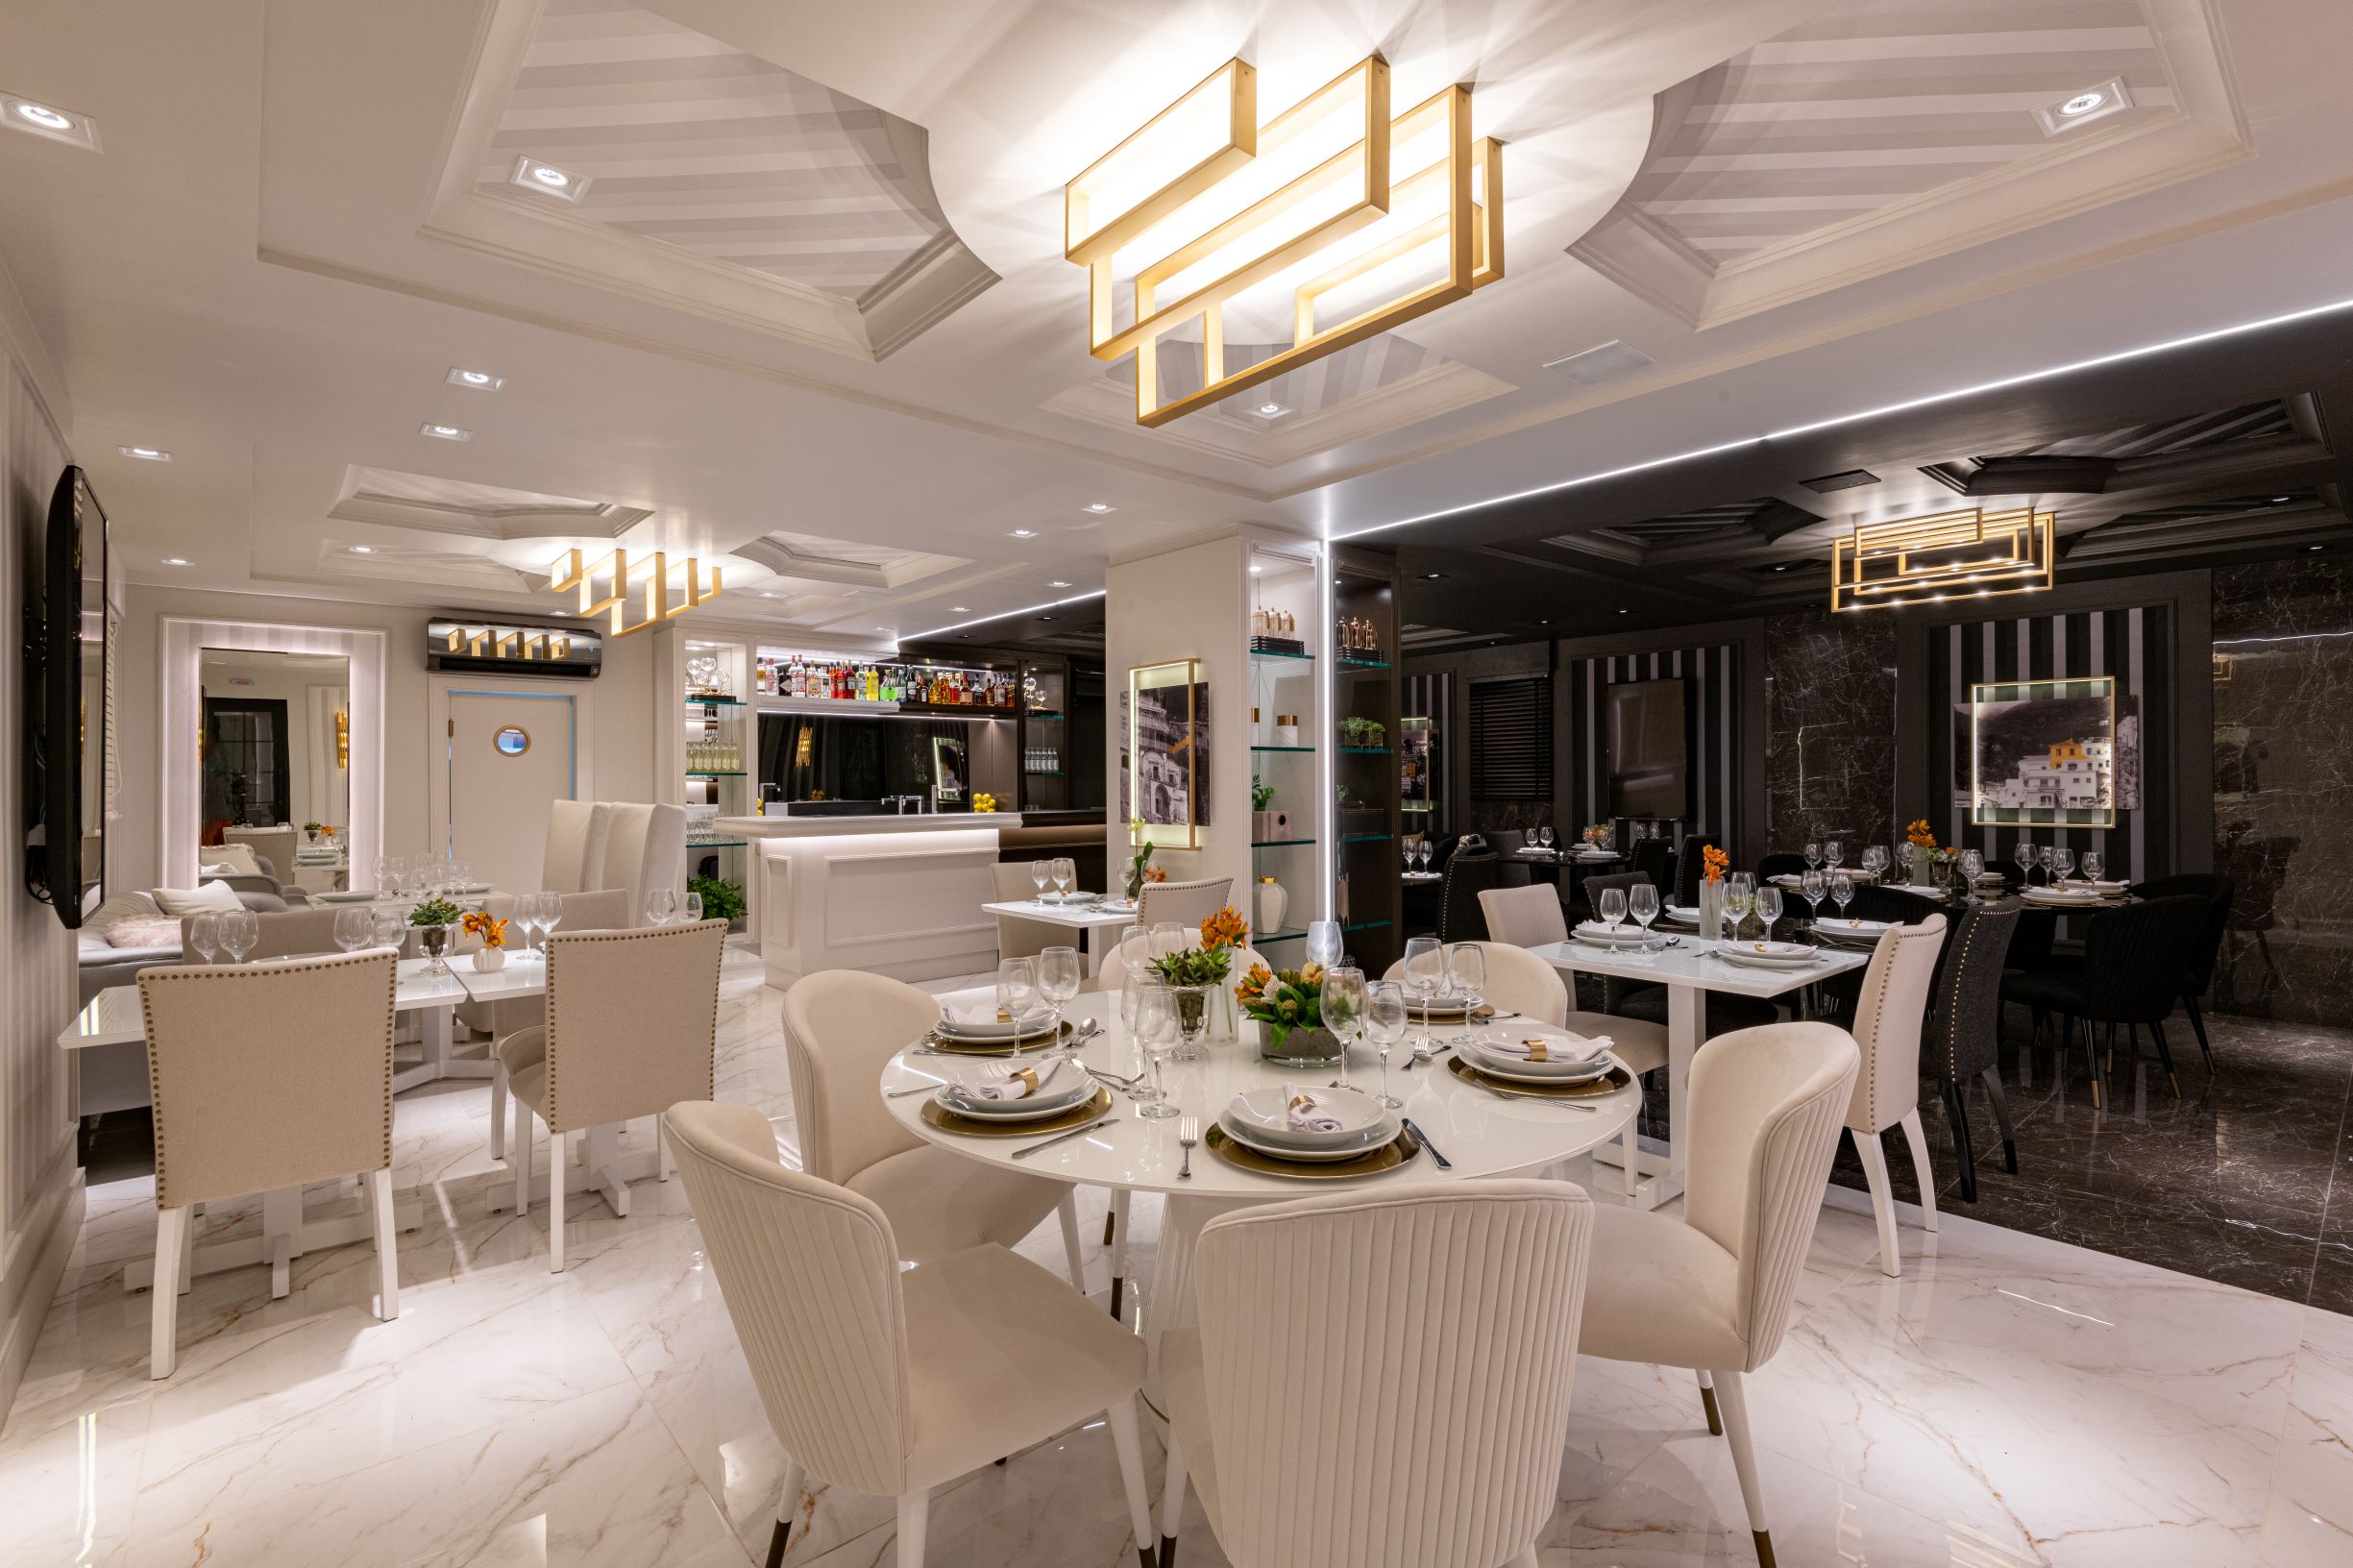 Restaurante Limone, CASACOR São Paulo 2019, Habitat Projetos Inteligentes. Restaurante com conceito de dualidade. "Lado dia", porcelanato que imita mármore branco, cadeiras clássicas brancas, mesas de mármore branco e teto de gesso.